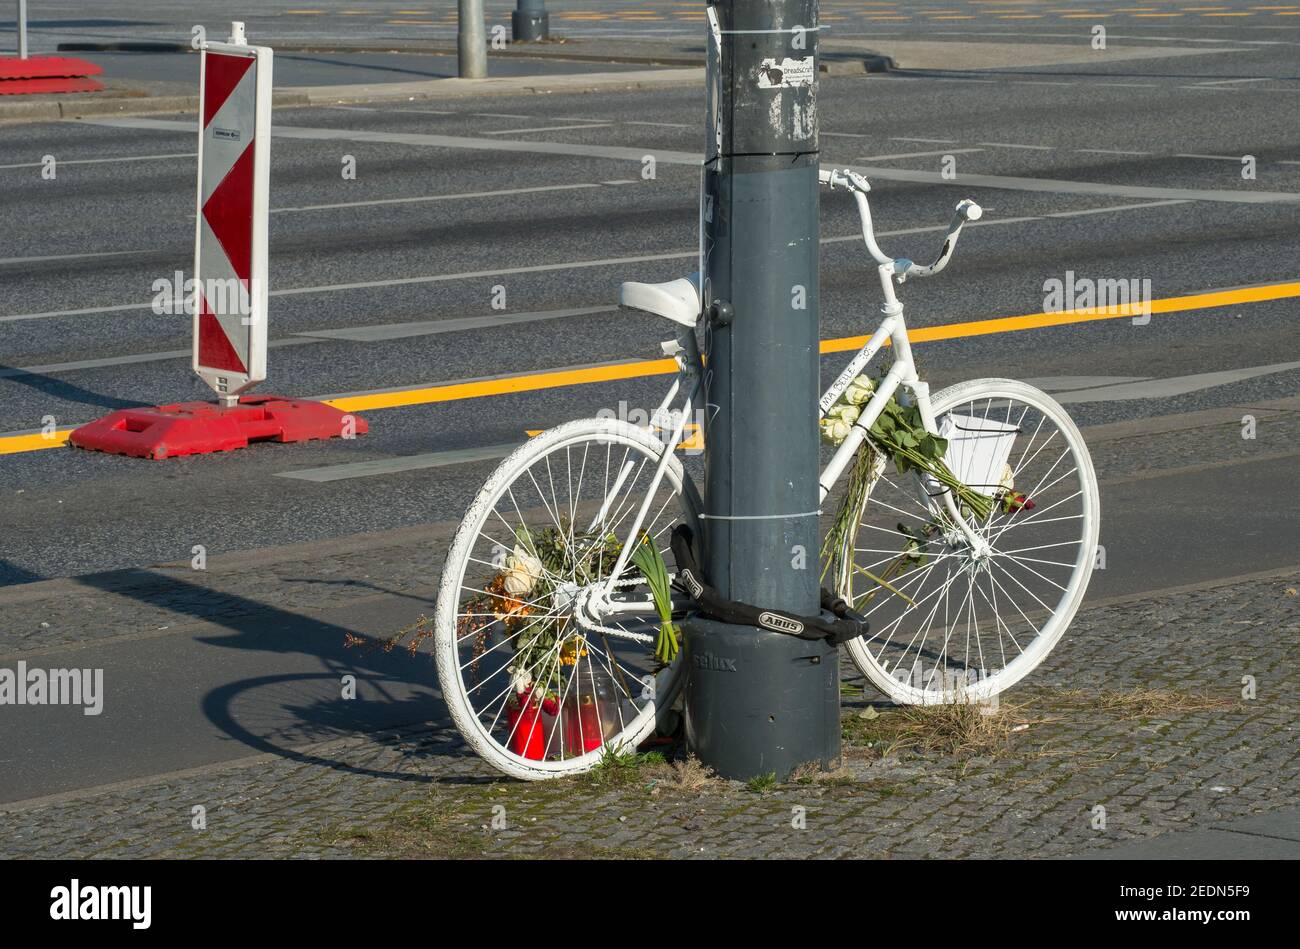 28.02.2019, Berlin, , Allemagne - Mitte - Ghost Bike, également appelé Mahnrad ou Geisterrad, sur une route principale de Berlin. 0CE190228D003CAROEX.JPG [VERSION DU MODÈLE : Banque D'Images